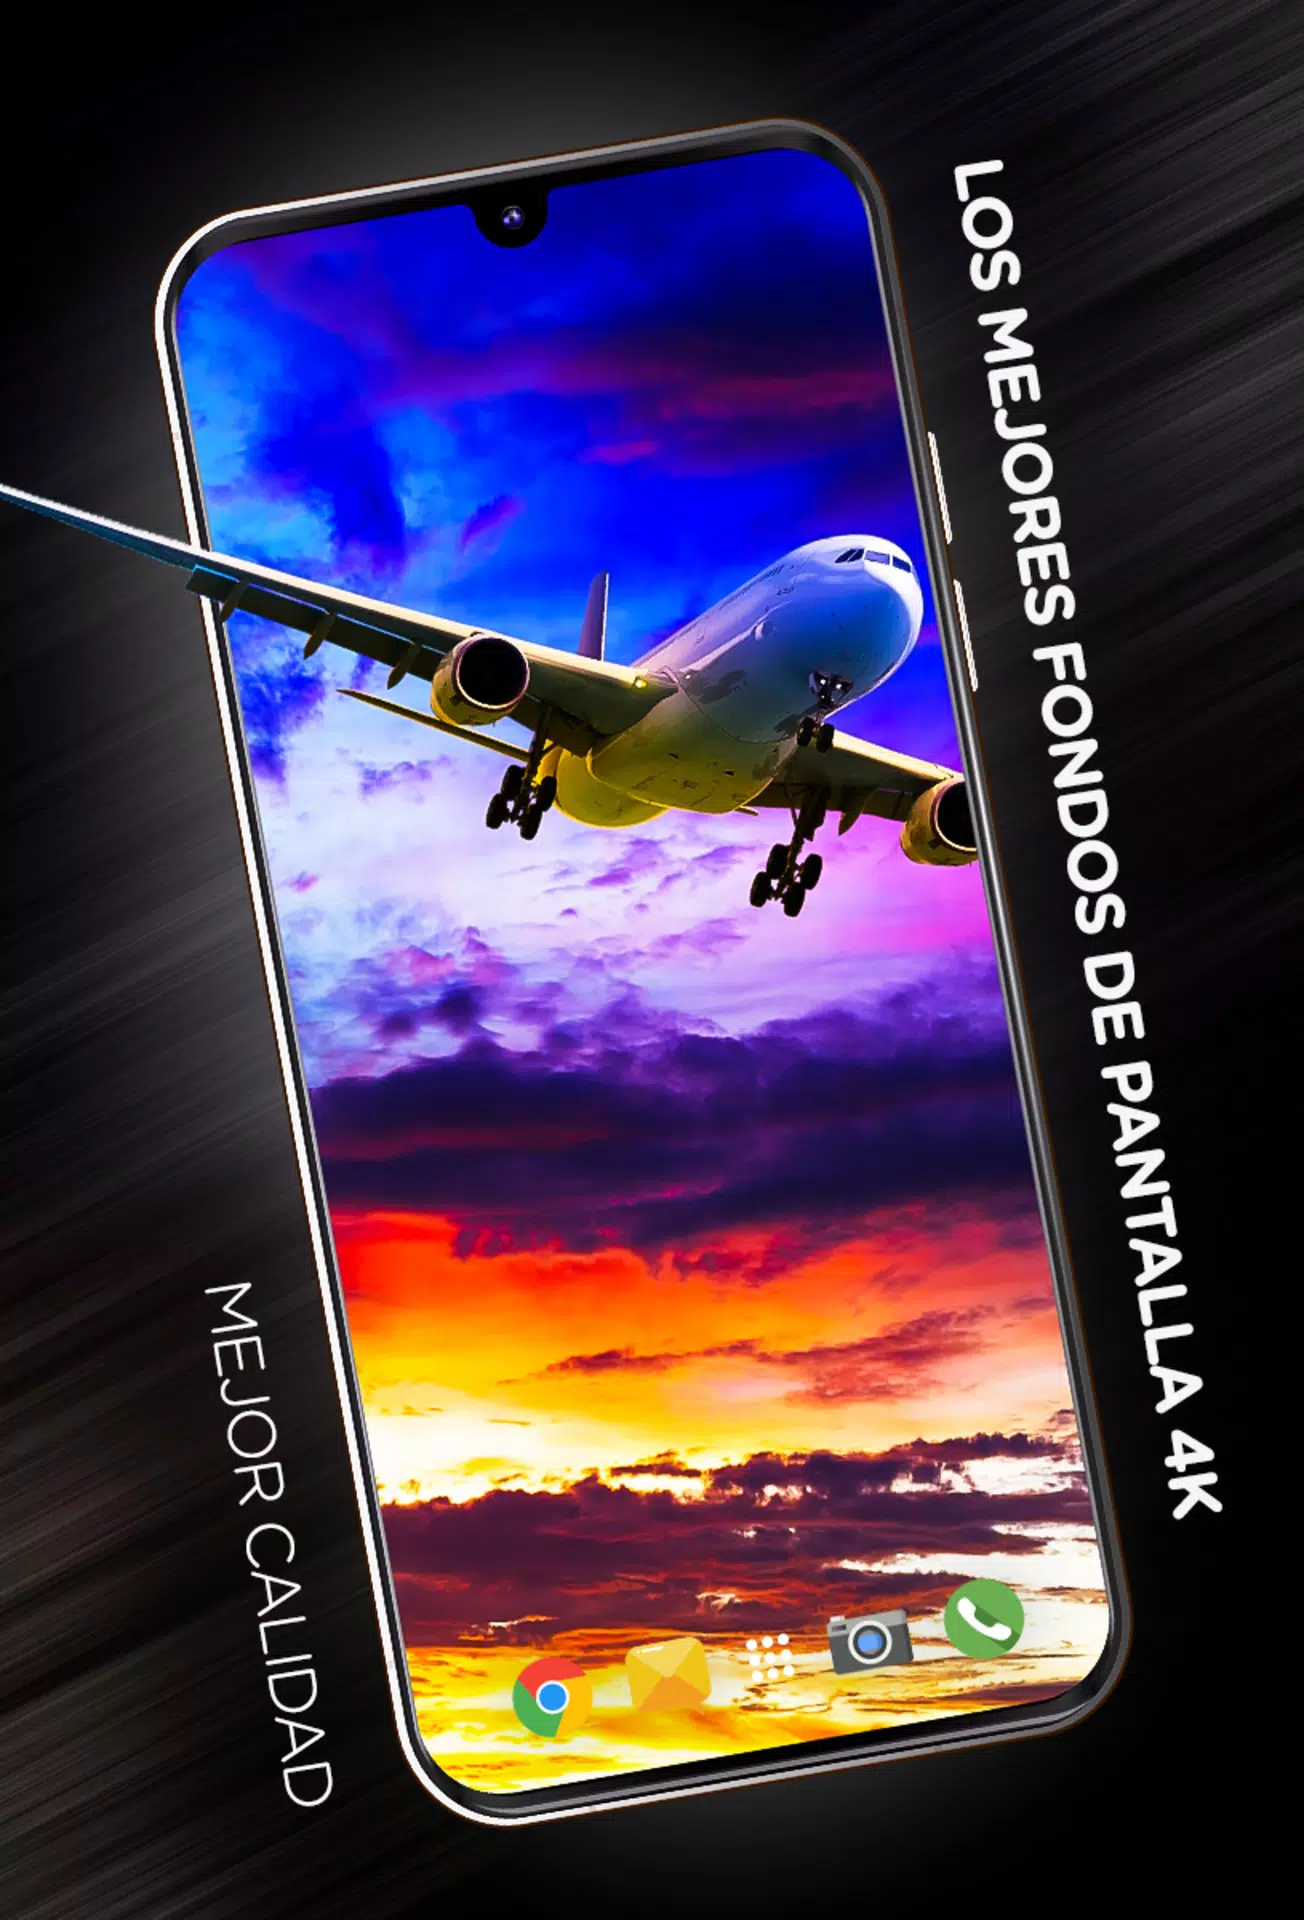 Descarga de APK de Fondos de aviones en 4K para Android